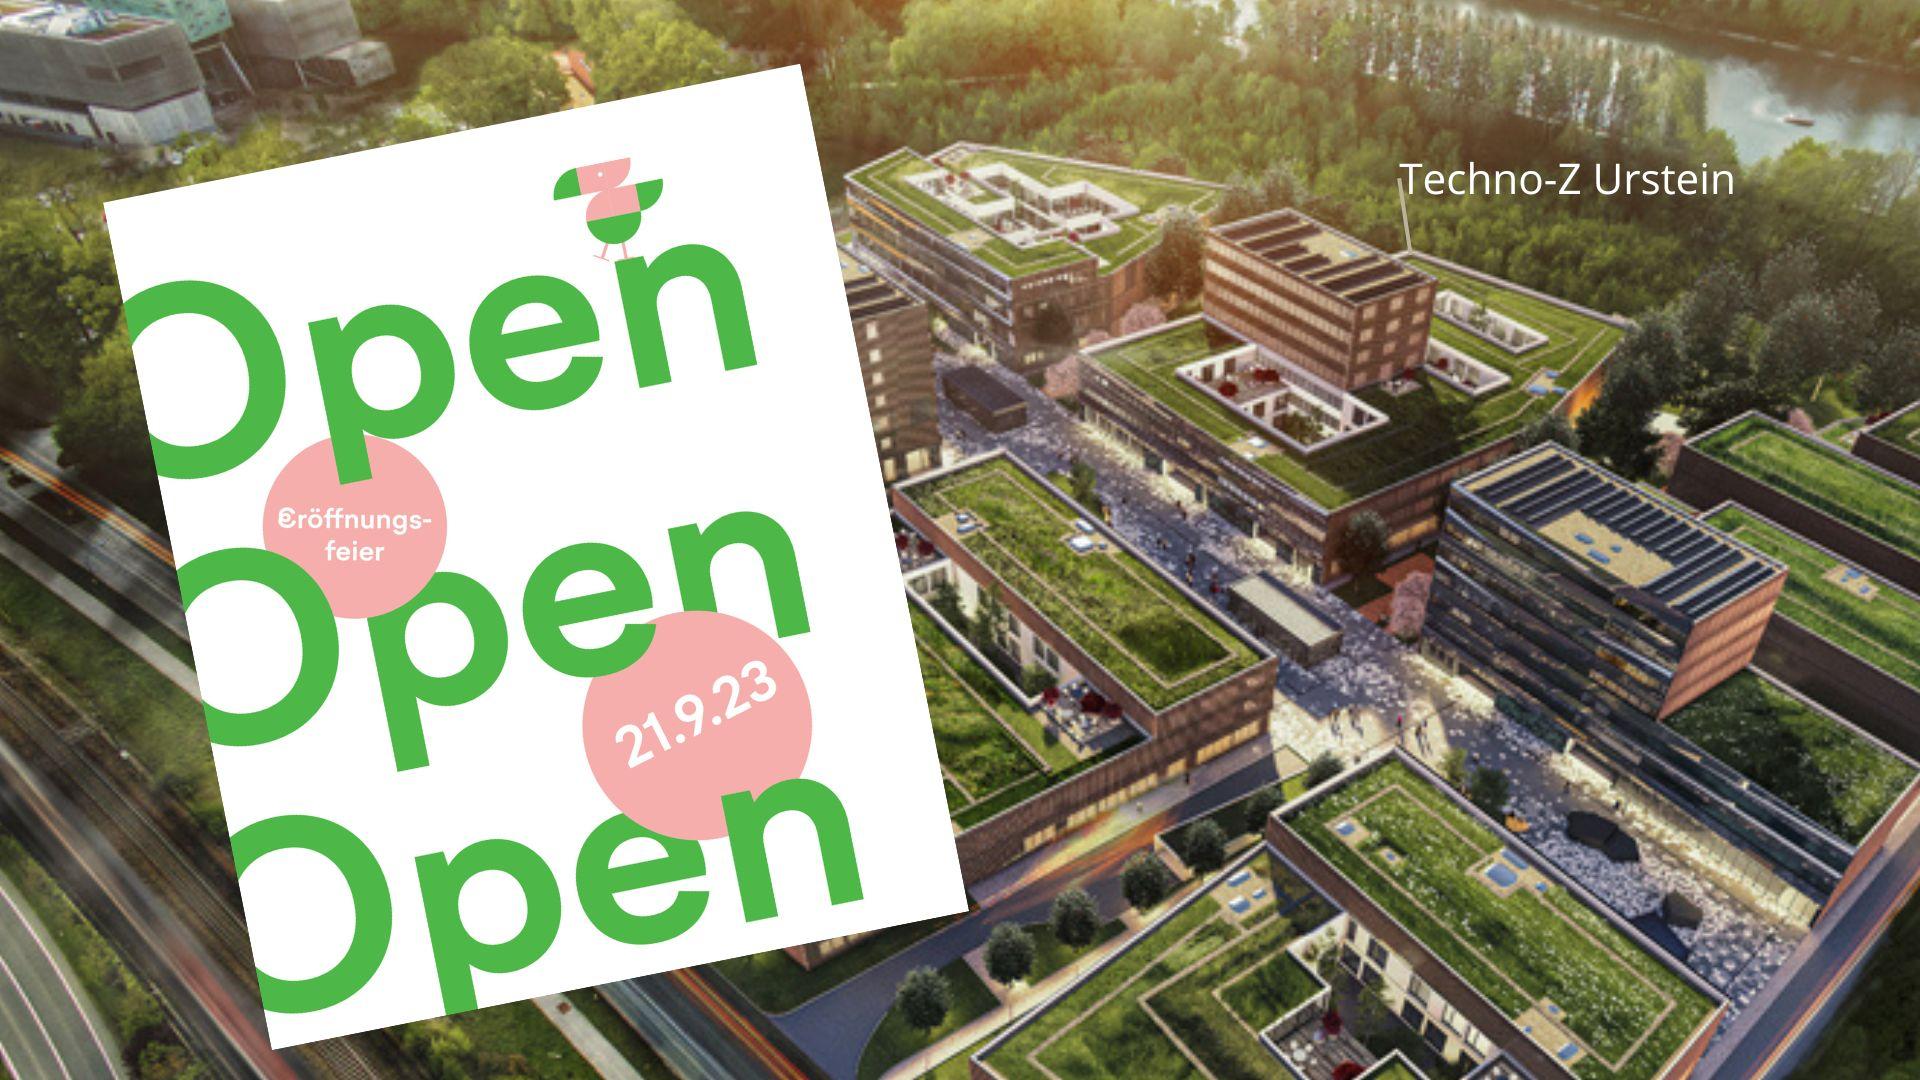 Plan mit Einladungkarte "Open" für die Eröffnugsfeier Techno-Z Urstein